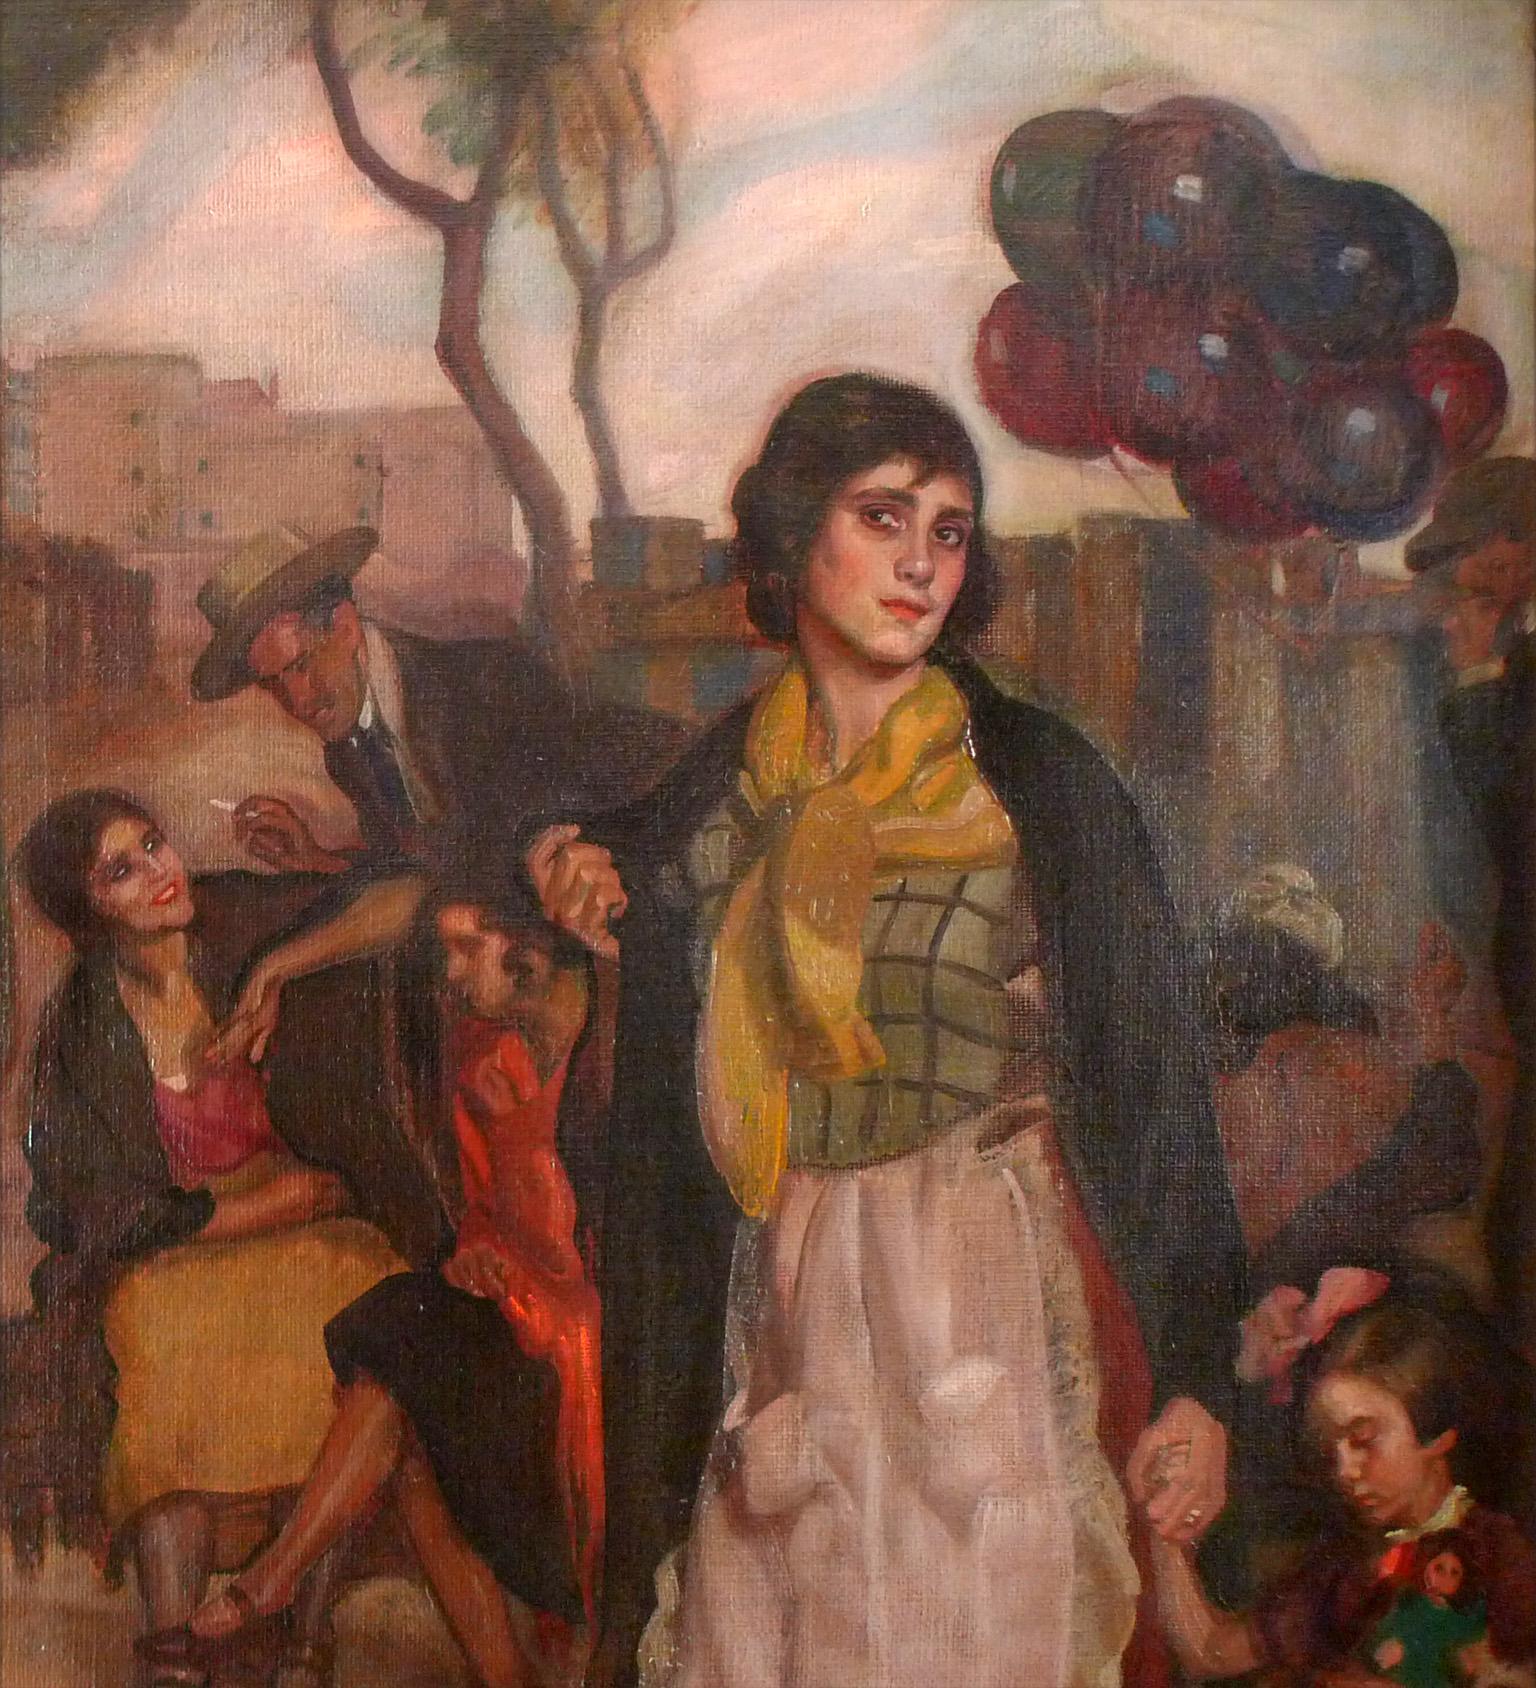 Día de mercado, Oil on Canvas by José María López Mezquita 5